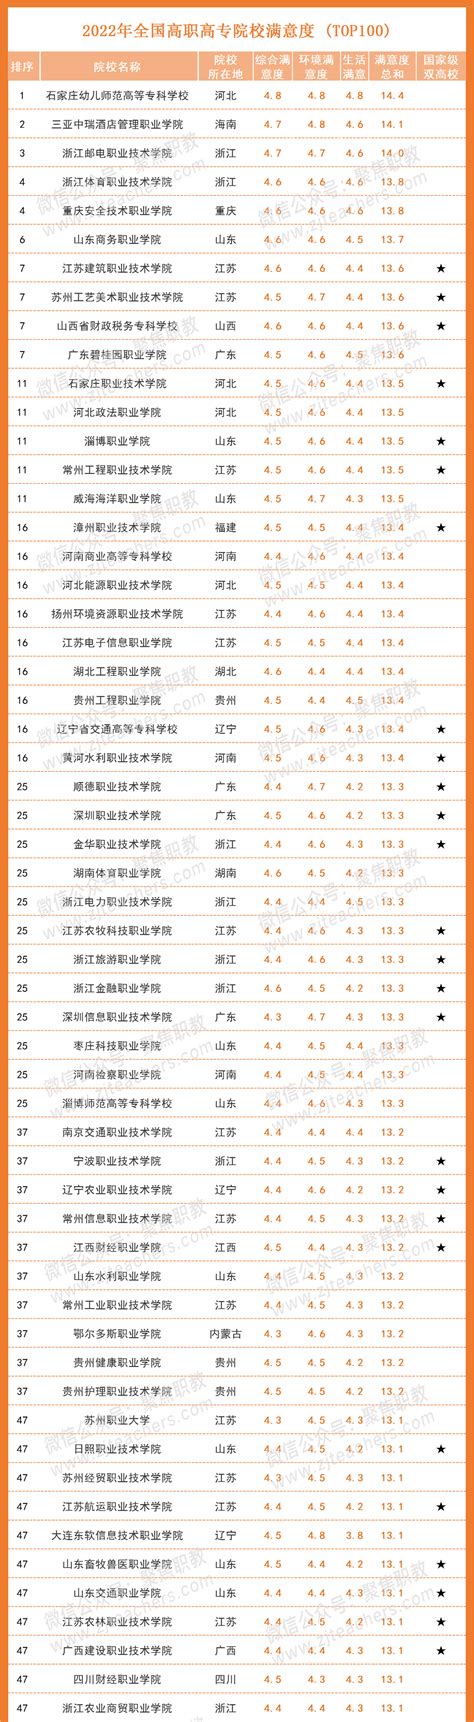 2019最热门专业排行_2019年最新版大学热门专业排名前十名汇总(2)_中国排行网